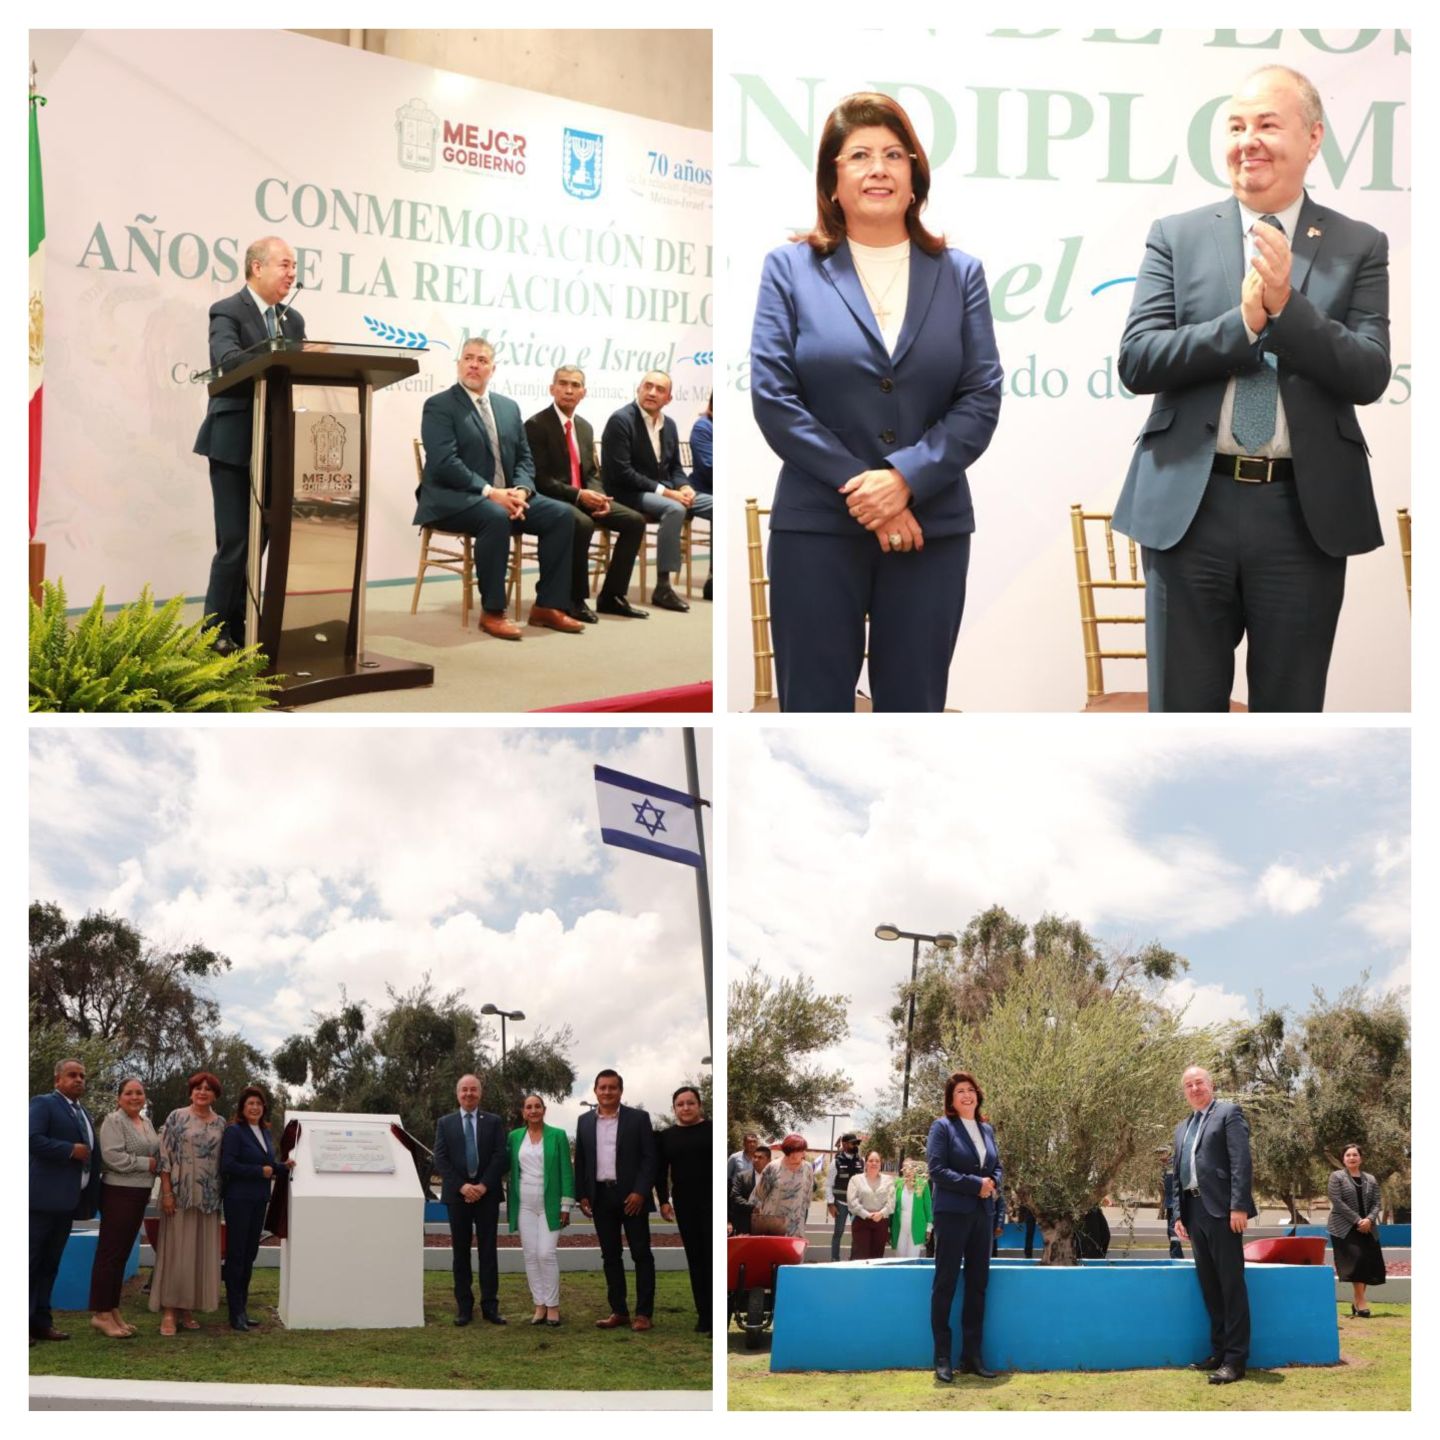 Develaron placa conmemorativa por 70 años de relaciones diplomáticas México-Israel